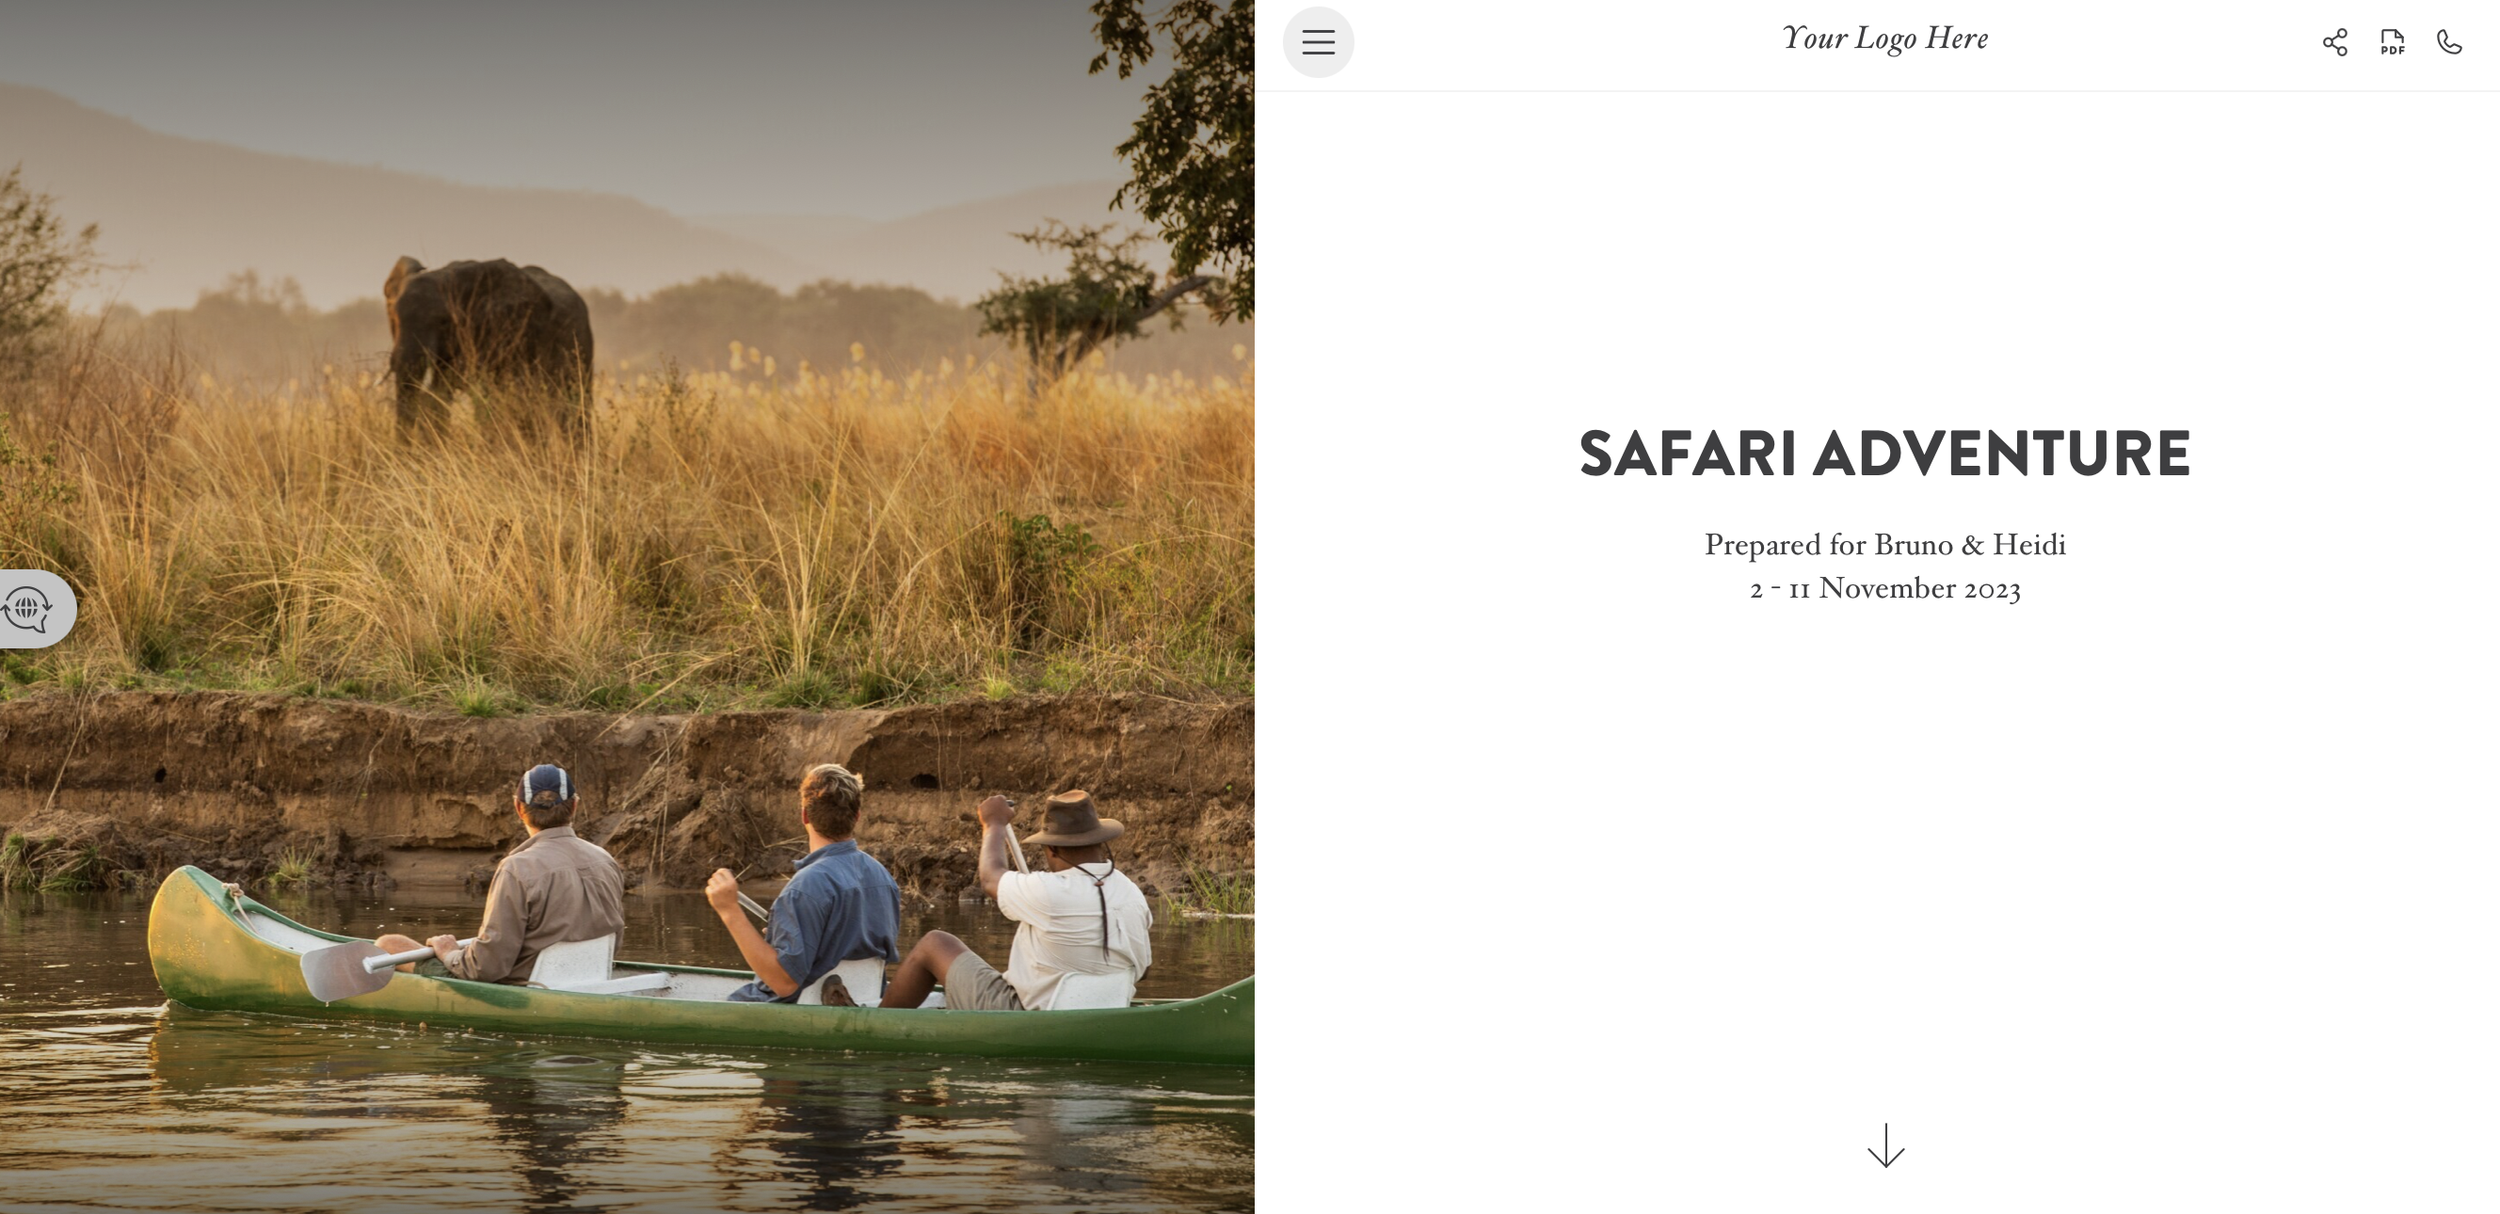 A Safari Adventure